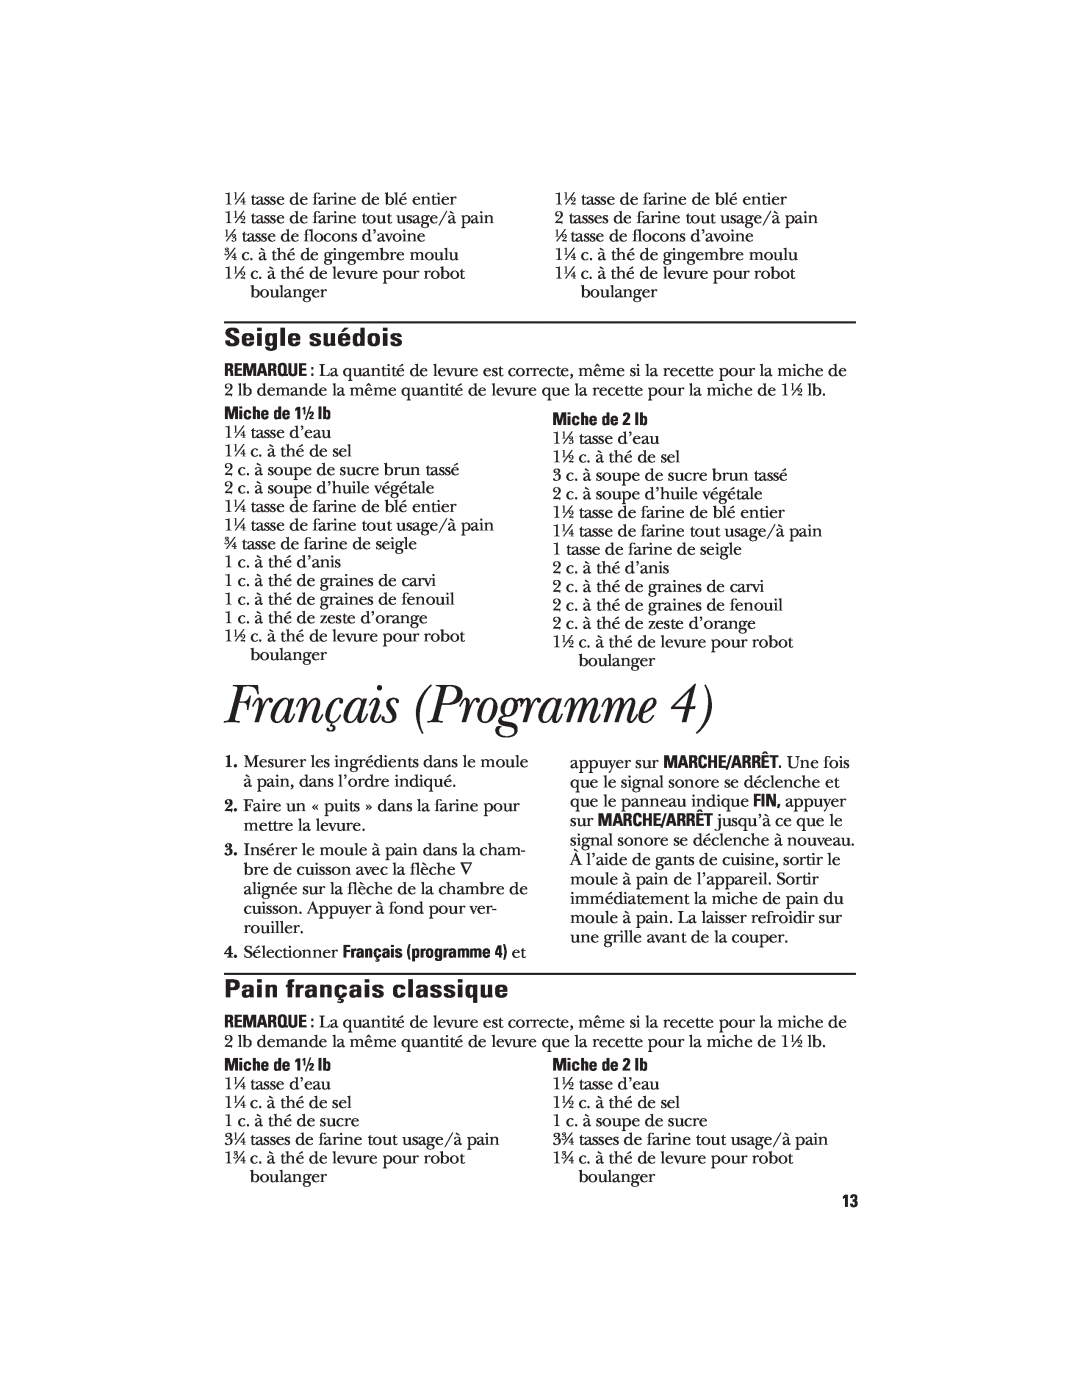 GE 840081600, 106732 Français Programme, Seigle suédois, Pain français classique, 4. Sélectionner Français programme 4 et 